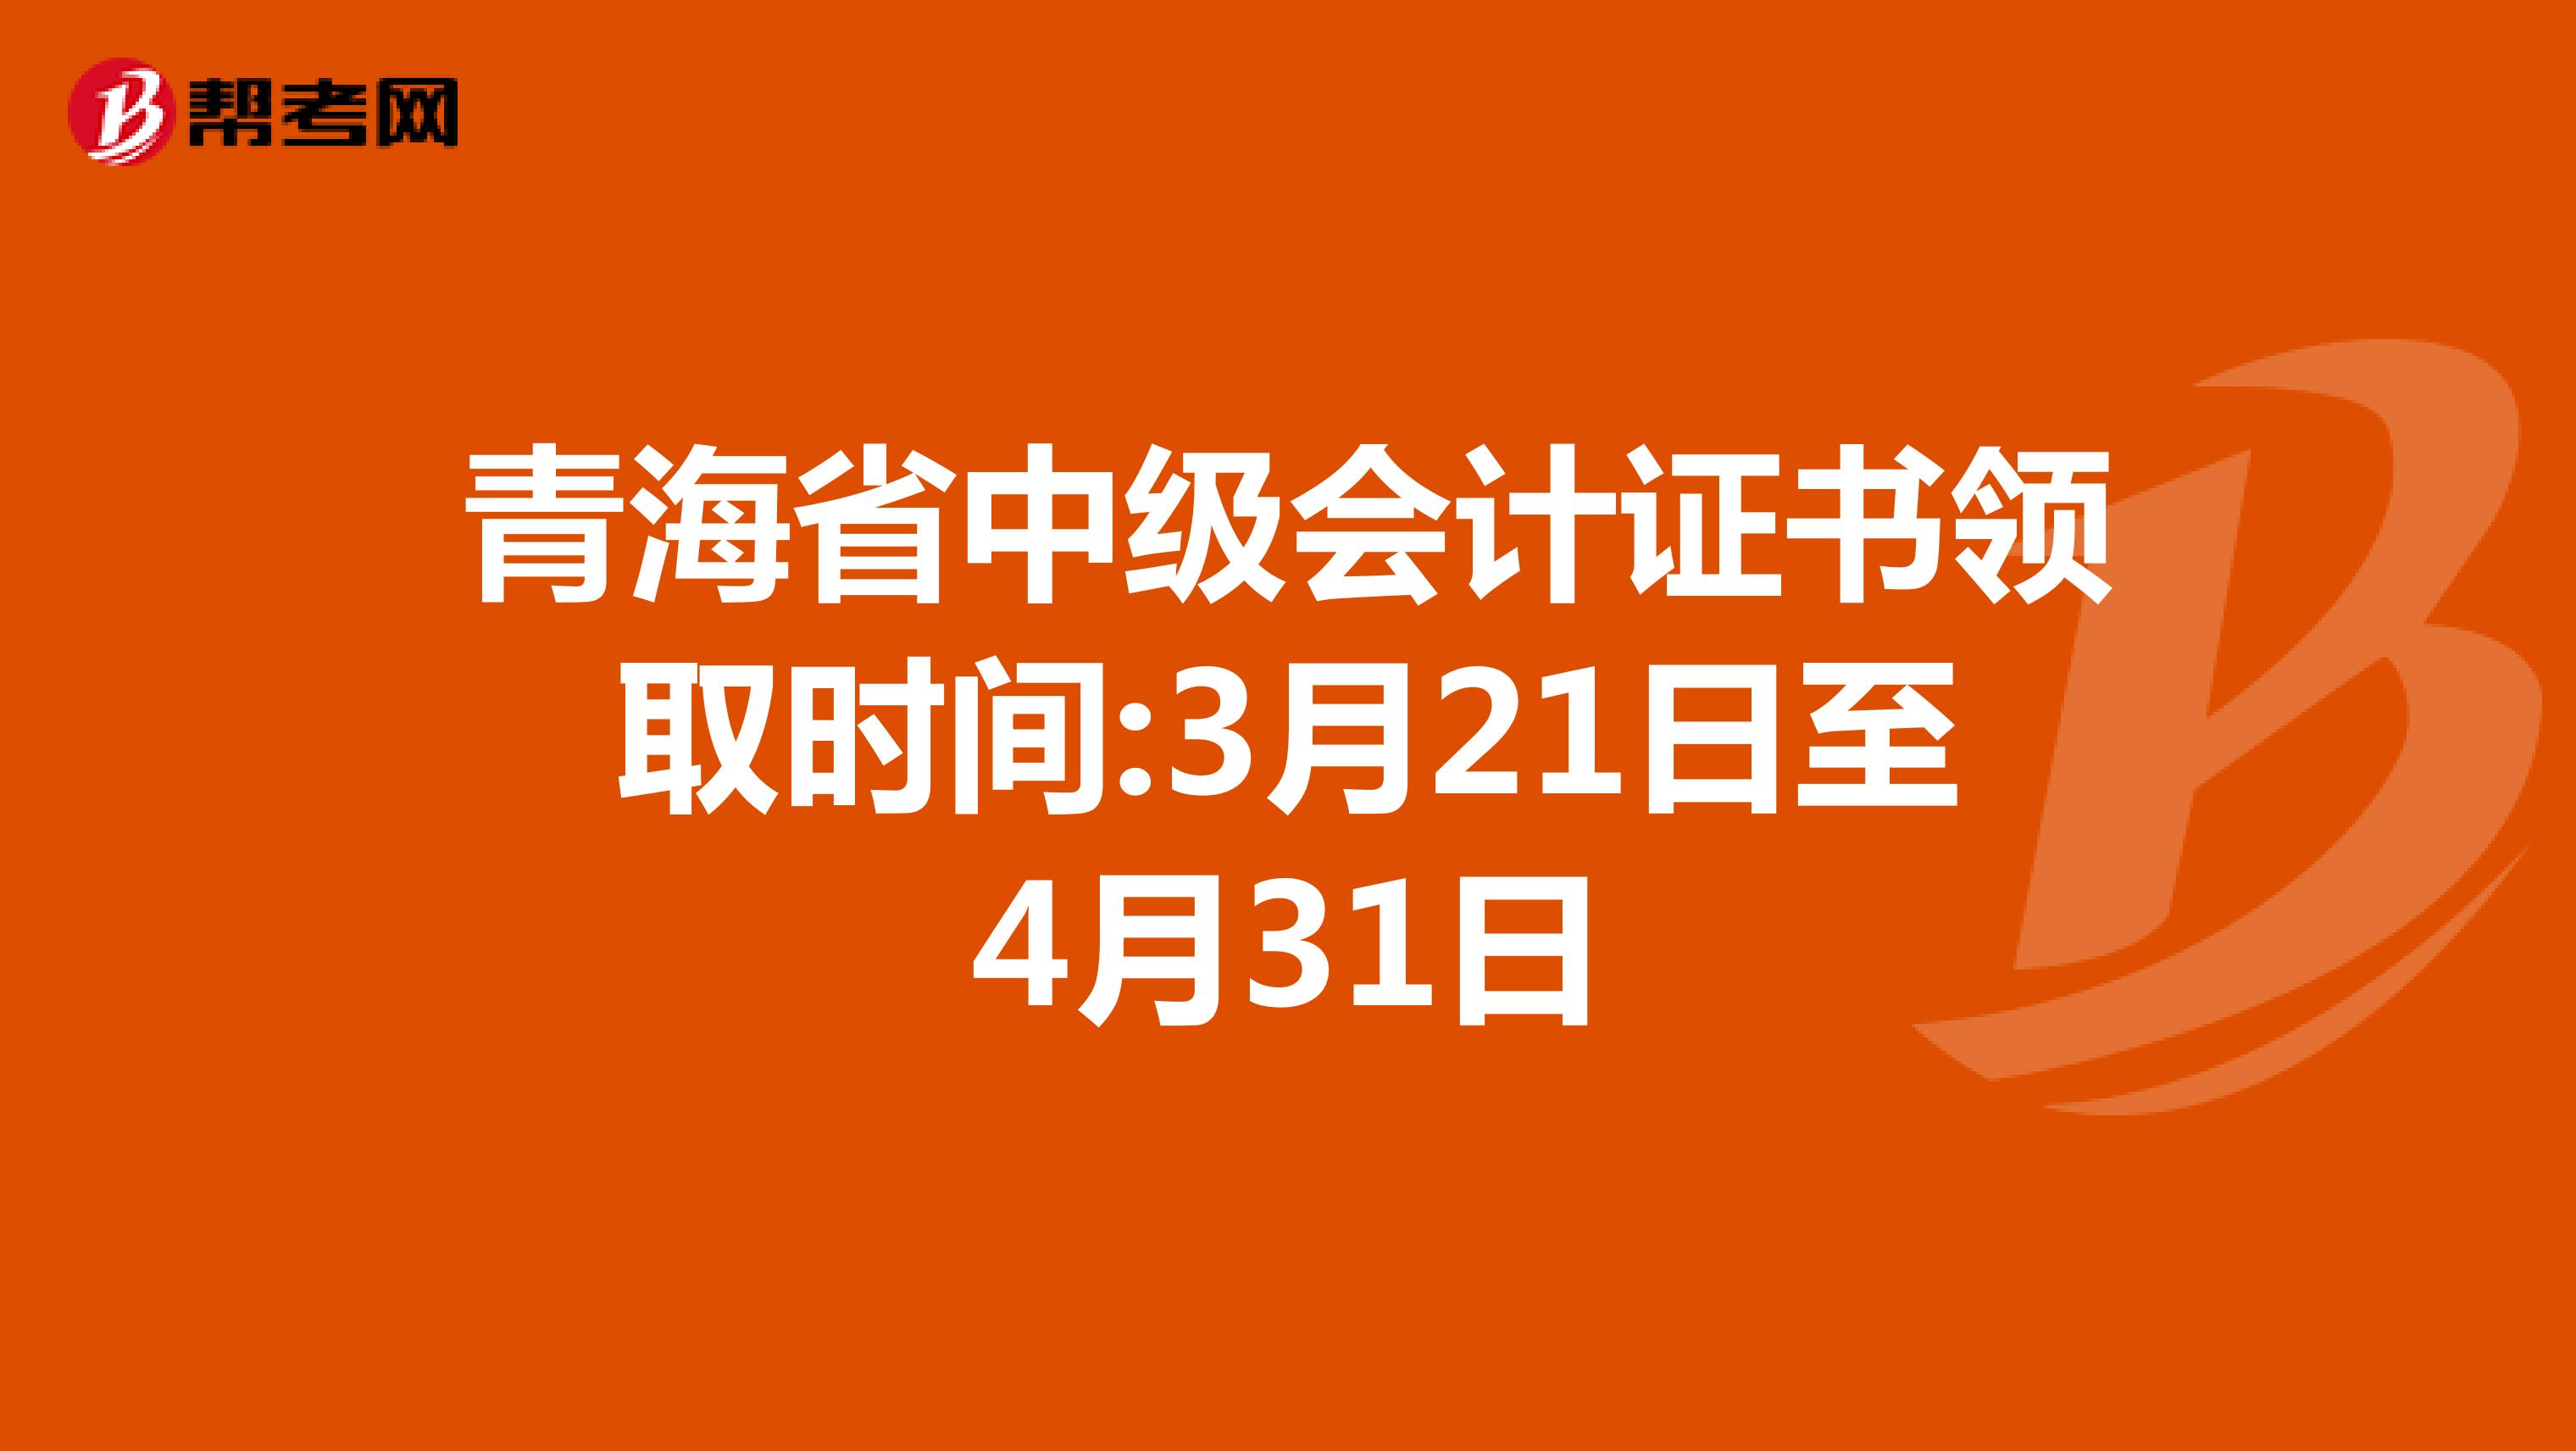 青海省中级会计证书领取时间:3月21日至4月31日